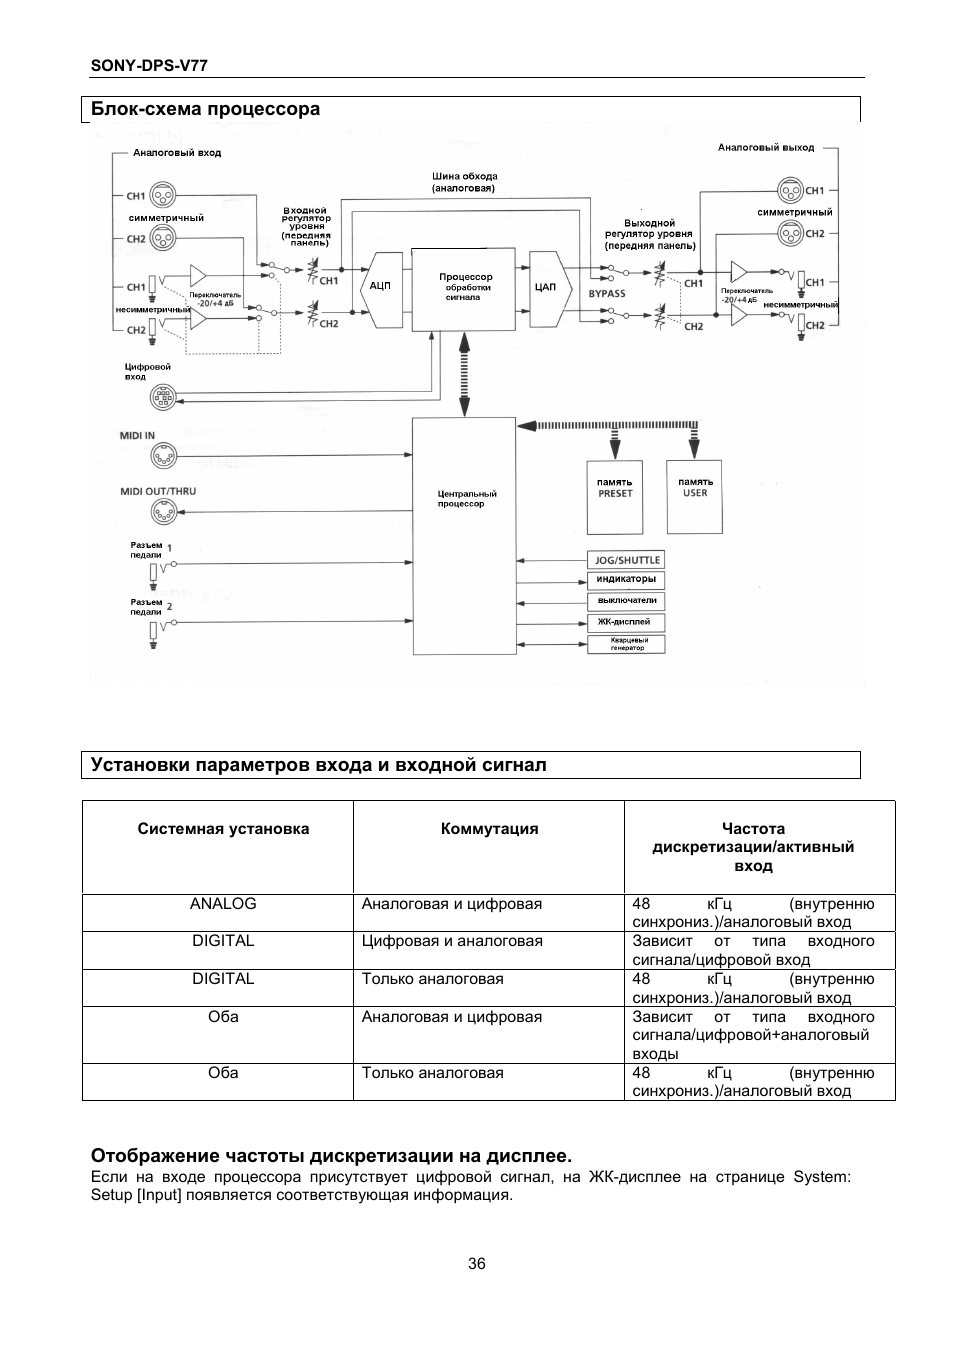 Отображение частоты дискретизации на дисплее | Инструкция по эксплуатации Sony dps-v77 | Страница 35 / 38